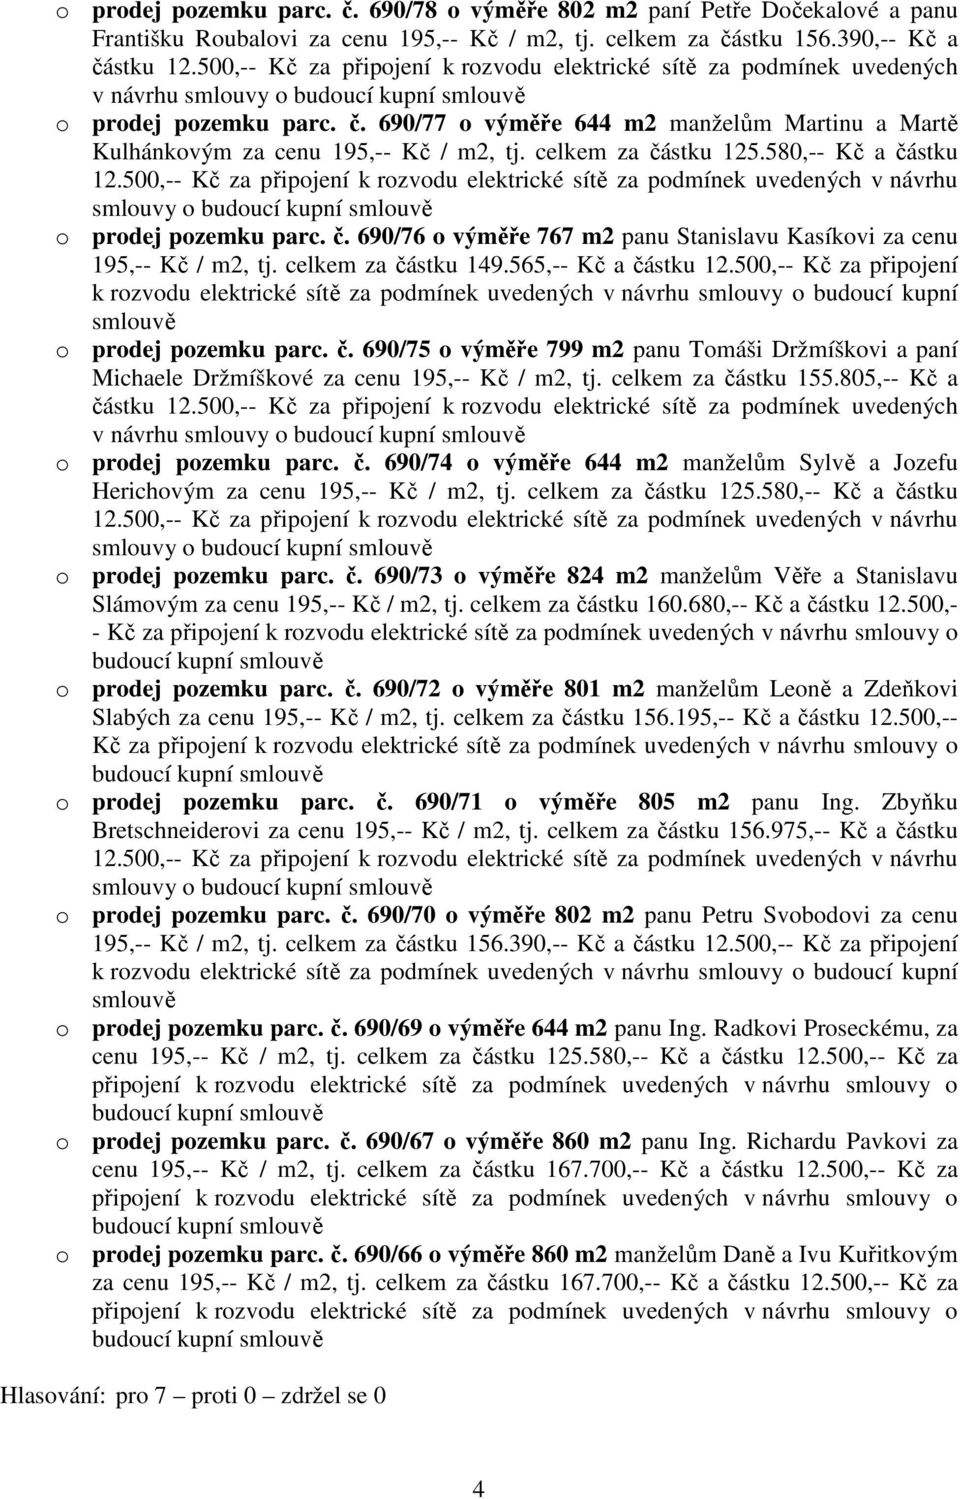 690/77 o výměře 644 m2 manželům Martinu a Martě Kulhánkovým za cenu 195,-- Kč / m2, tj. celkem za částku 125.580,-- Kč a částku 12.